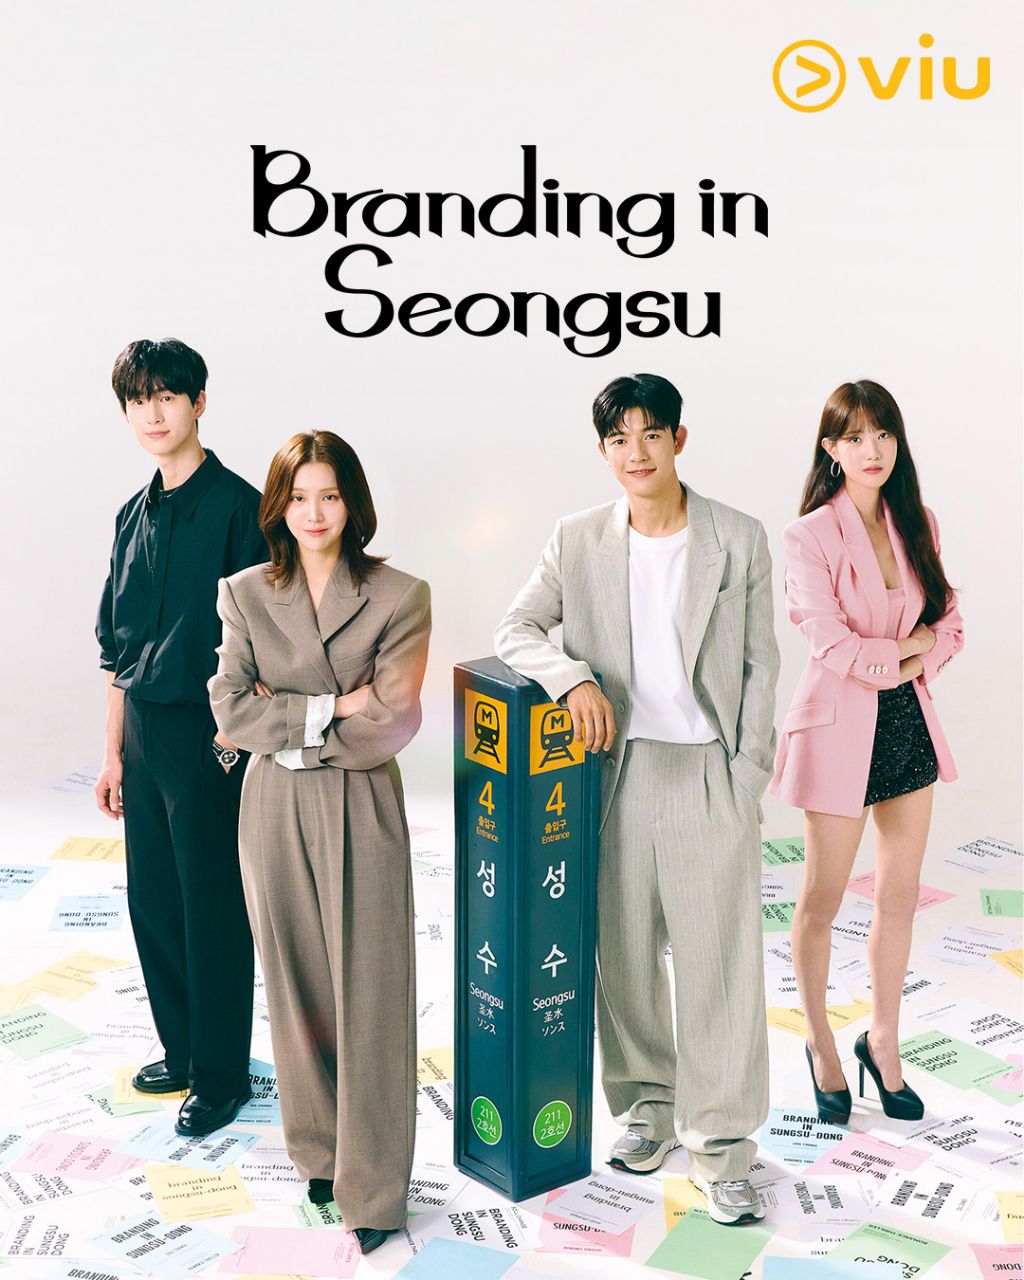 مسلسل العلامة التجارية في سيونغسو Branding in Seongsu الحلقة 7